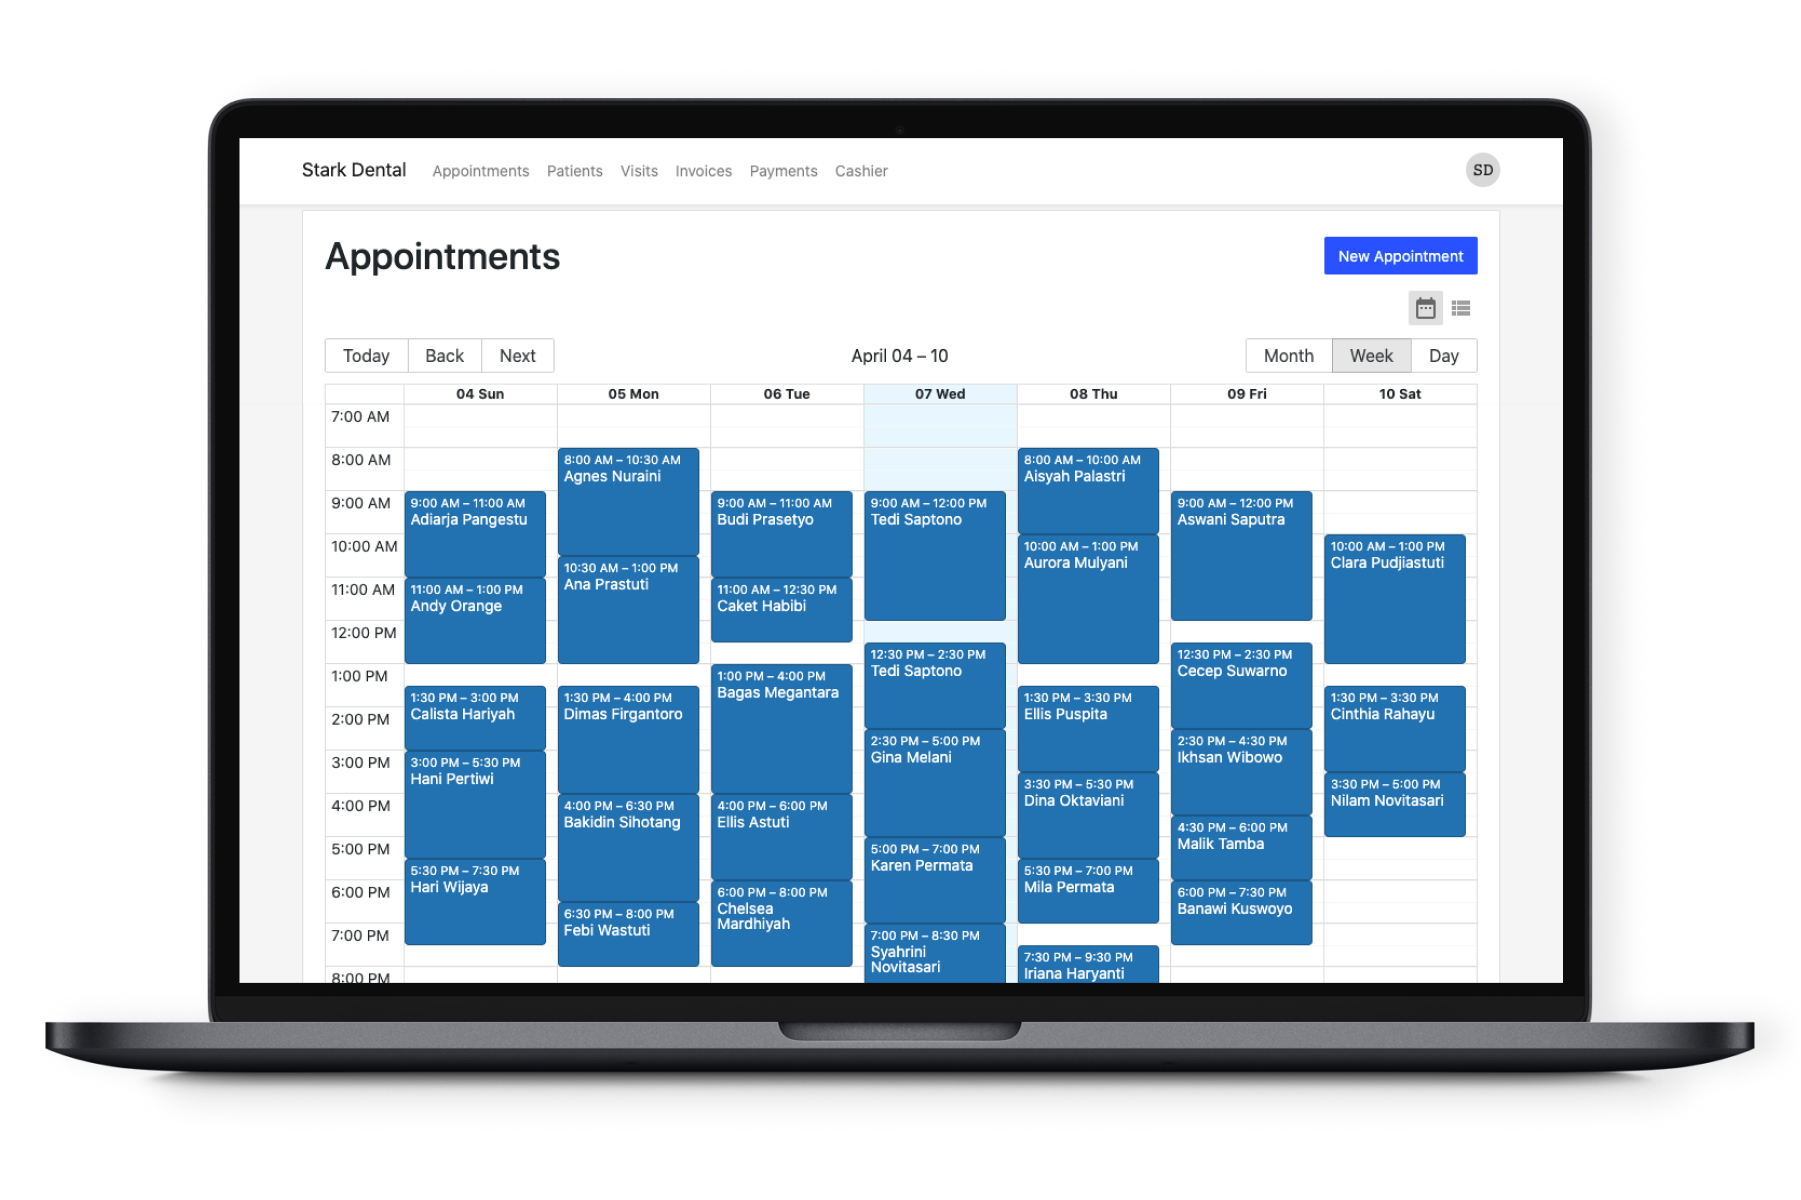 Plexo Appointment Patient Scheduling System, penampilan seperti Google Calendar. Plexo aplikasi klinik gigi dengan sistem penjadwalan pasien dan rekam medis elektronik terintegrasi